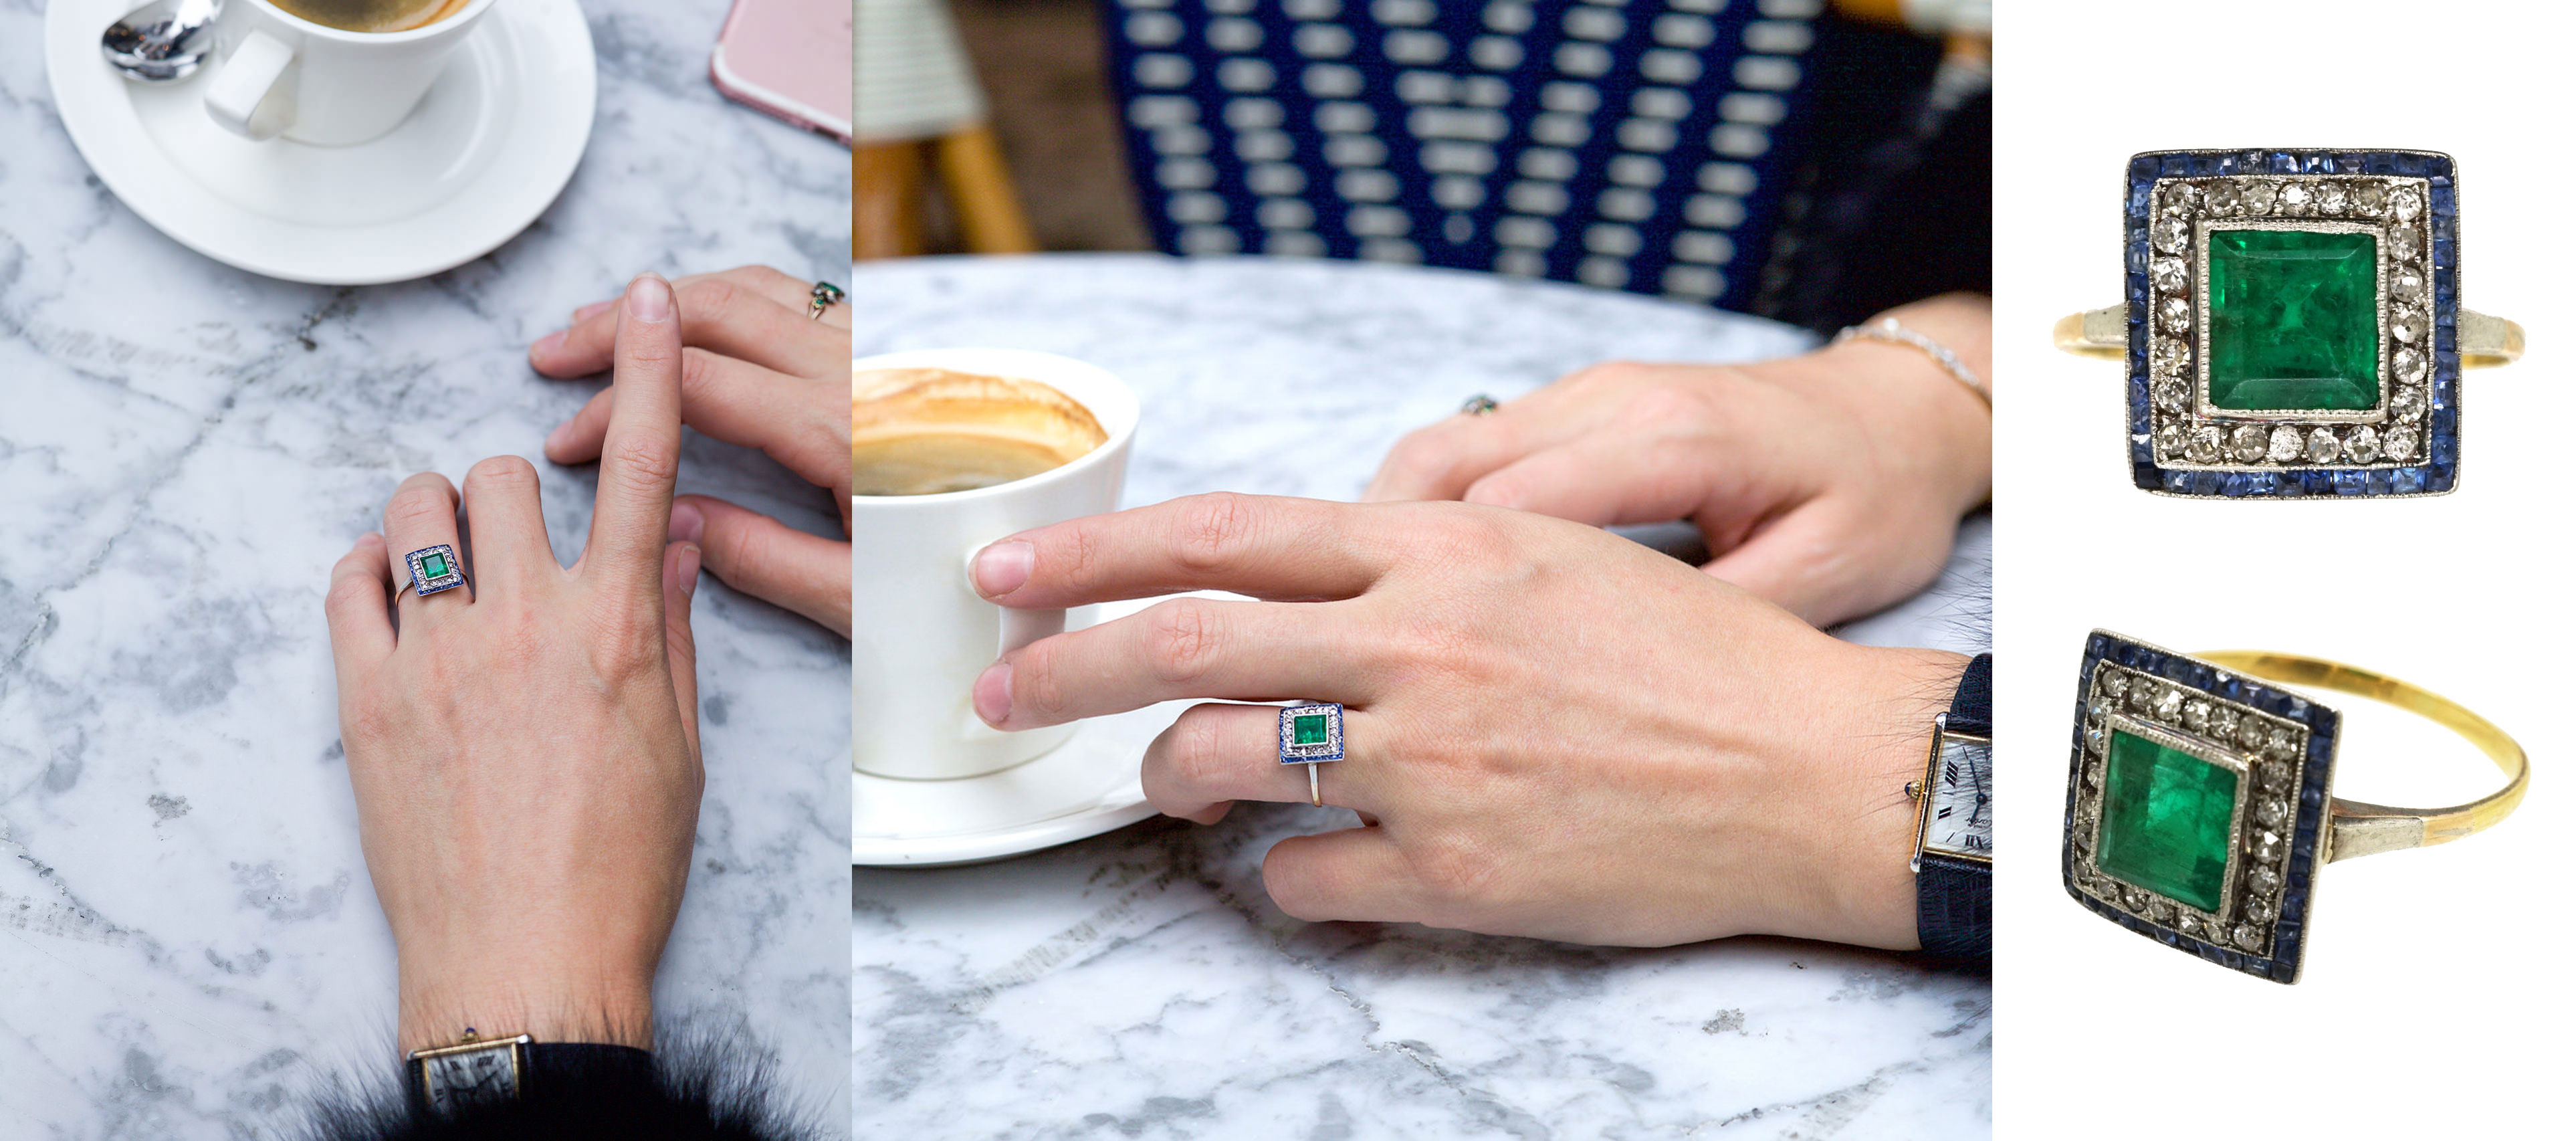 Art Deco Sapphire, Emerald & Diamond Square Ring